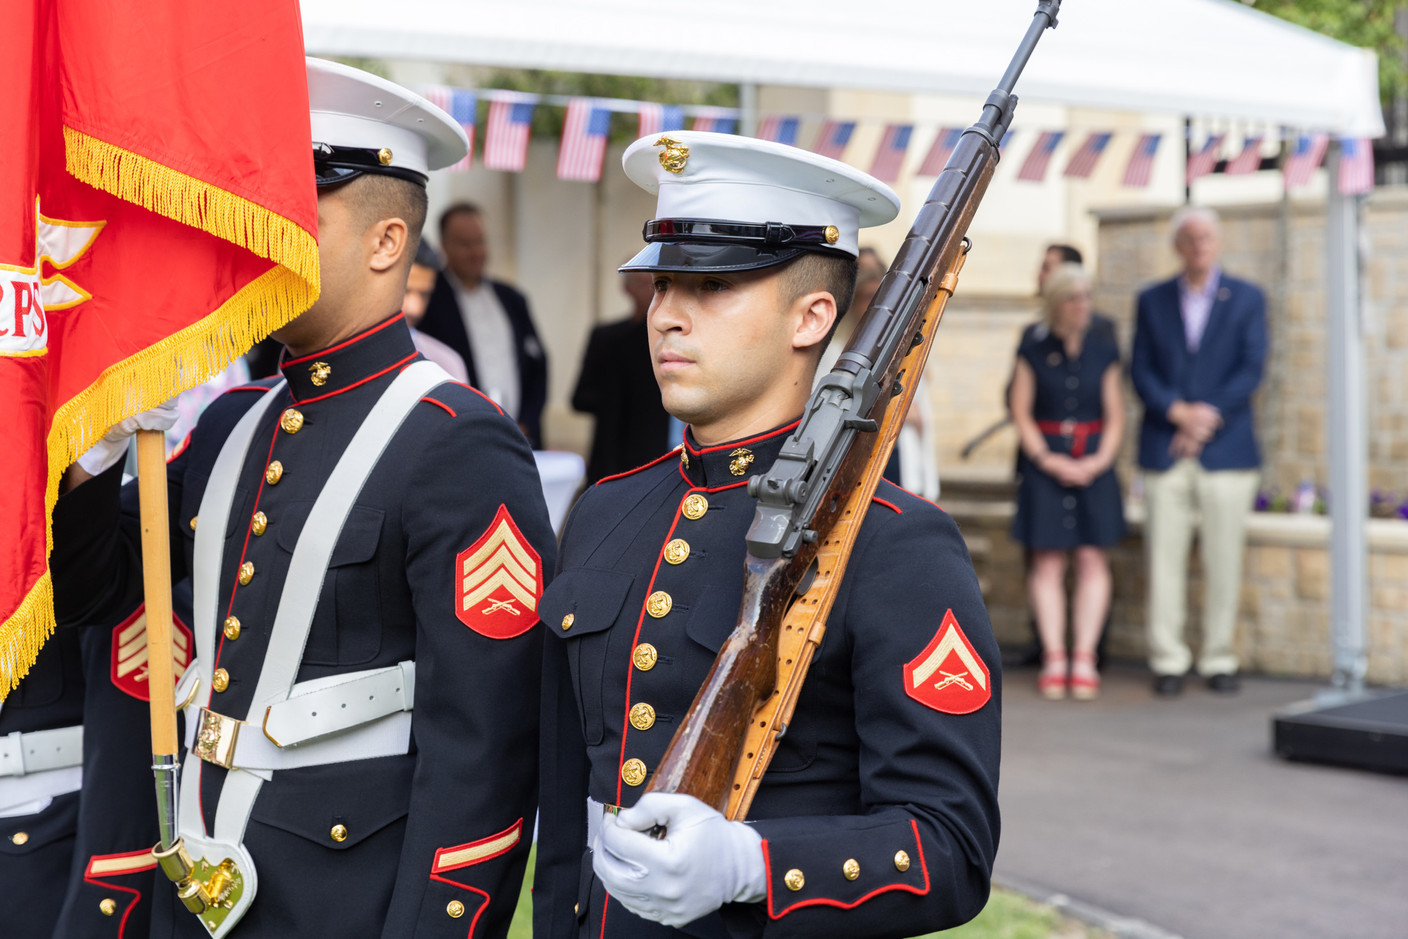 Members of the US marine corps. Photo: Romain Gamba/Maison Moderne